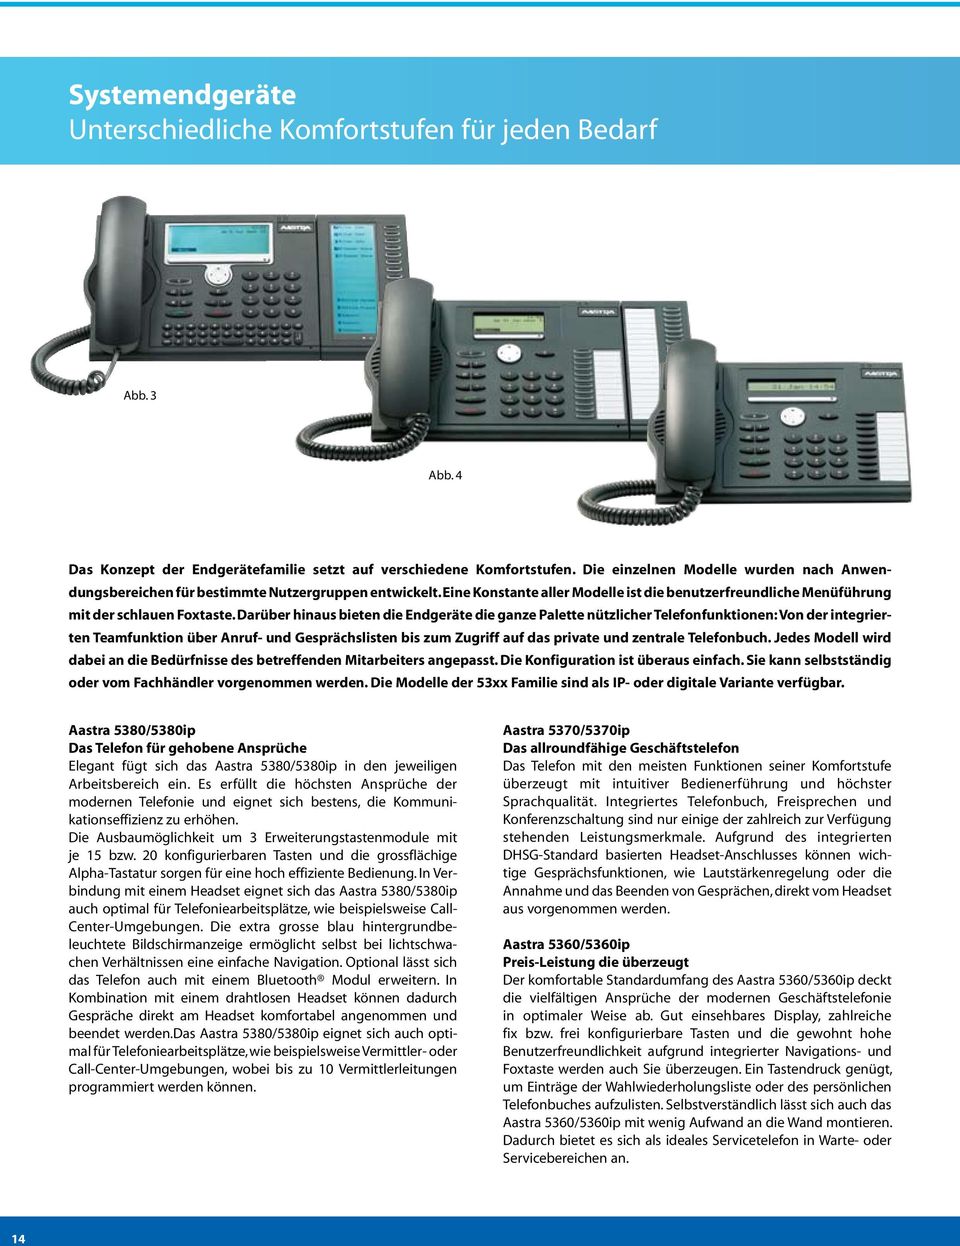 Darüber hinaus bieten die Endgeräte die ganze Palette nützlicher Telefon funktionen: Von der integrierten Teamfunktion über Anruf- und Gesprächslisten bis zum Zugriff auf das private und zentrale